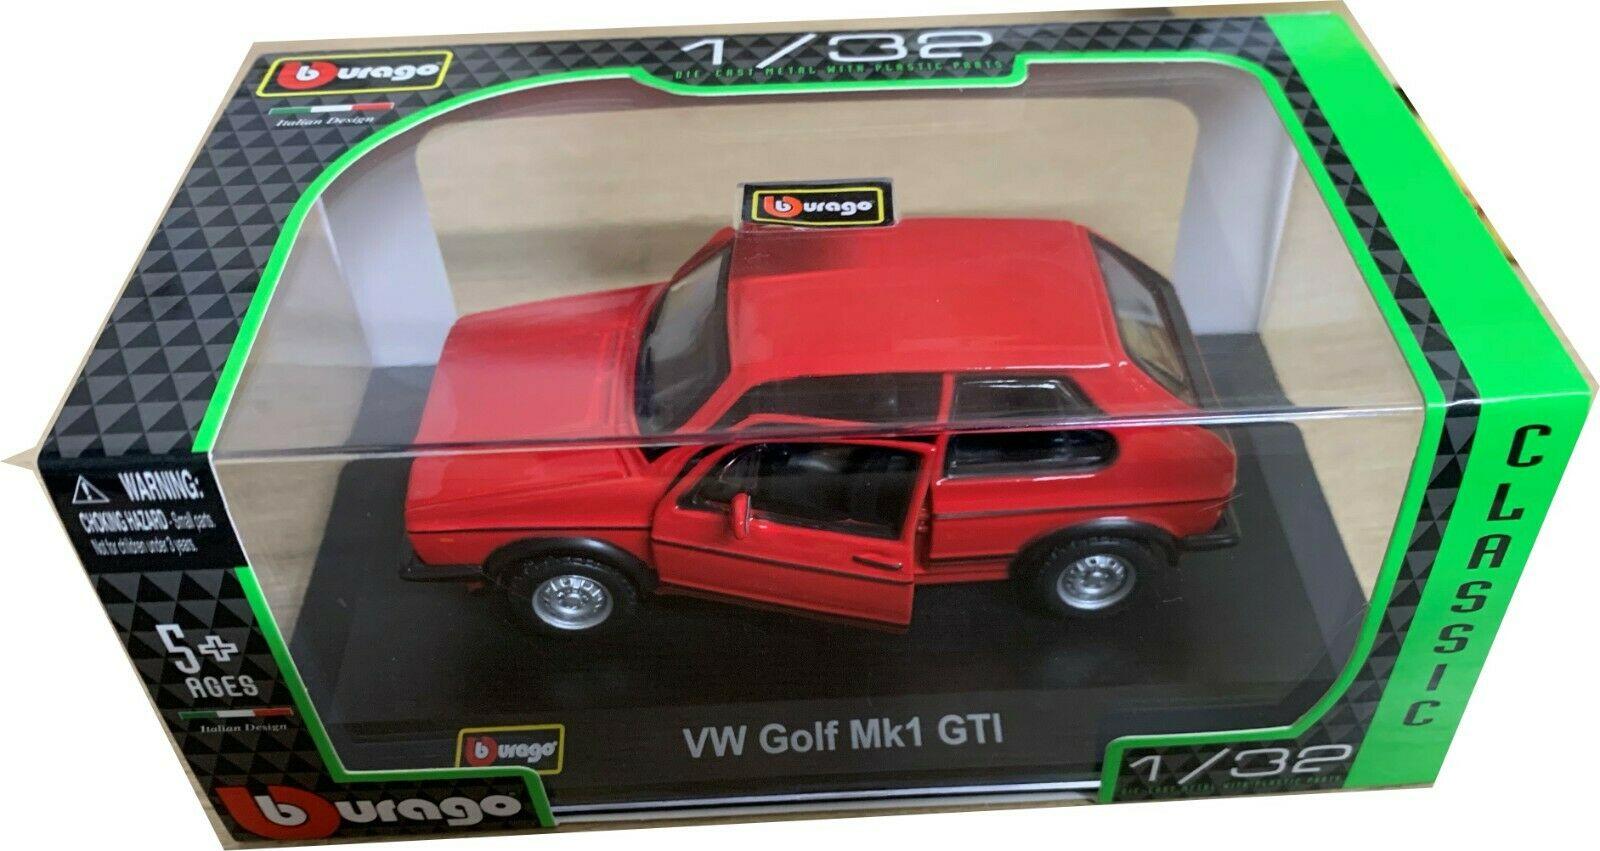 VW Golf GTi mark 1, 1979 in Red Bburago 1:32 scale diecast model